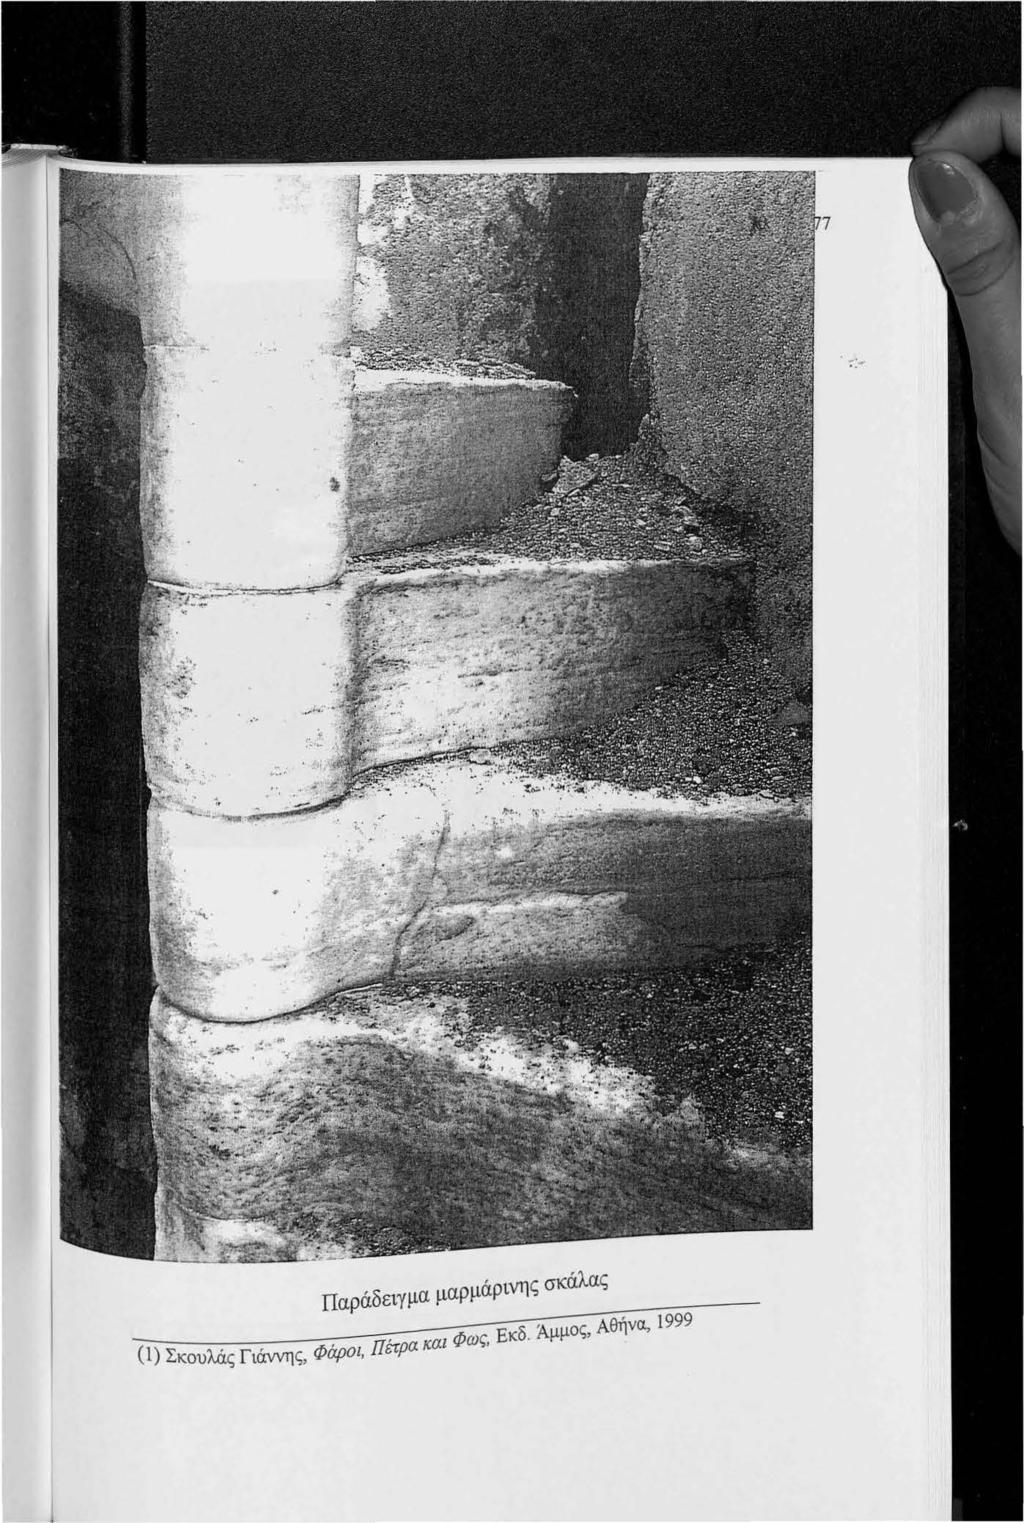 Παράδειγμα μαρμάρινη ς σκάλας (1) Σκουλάς